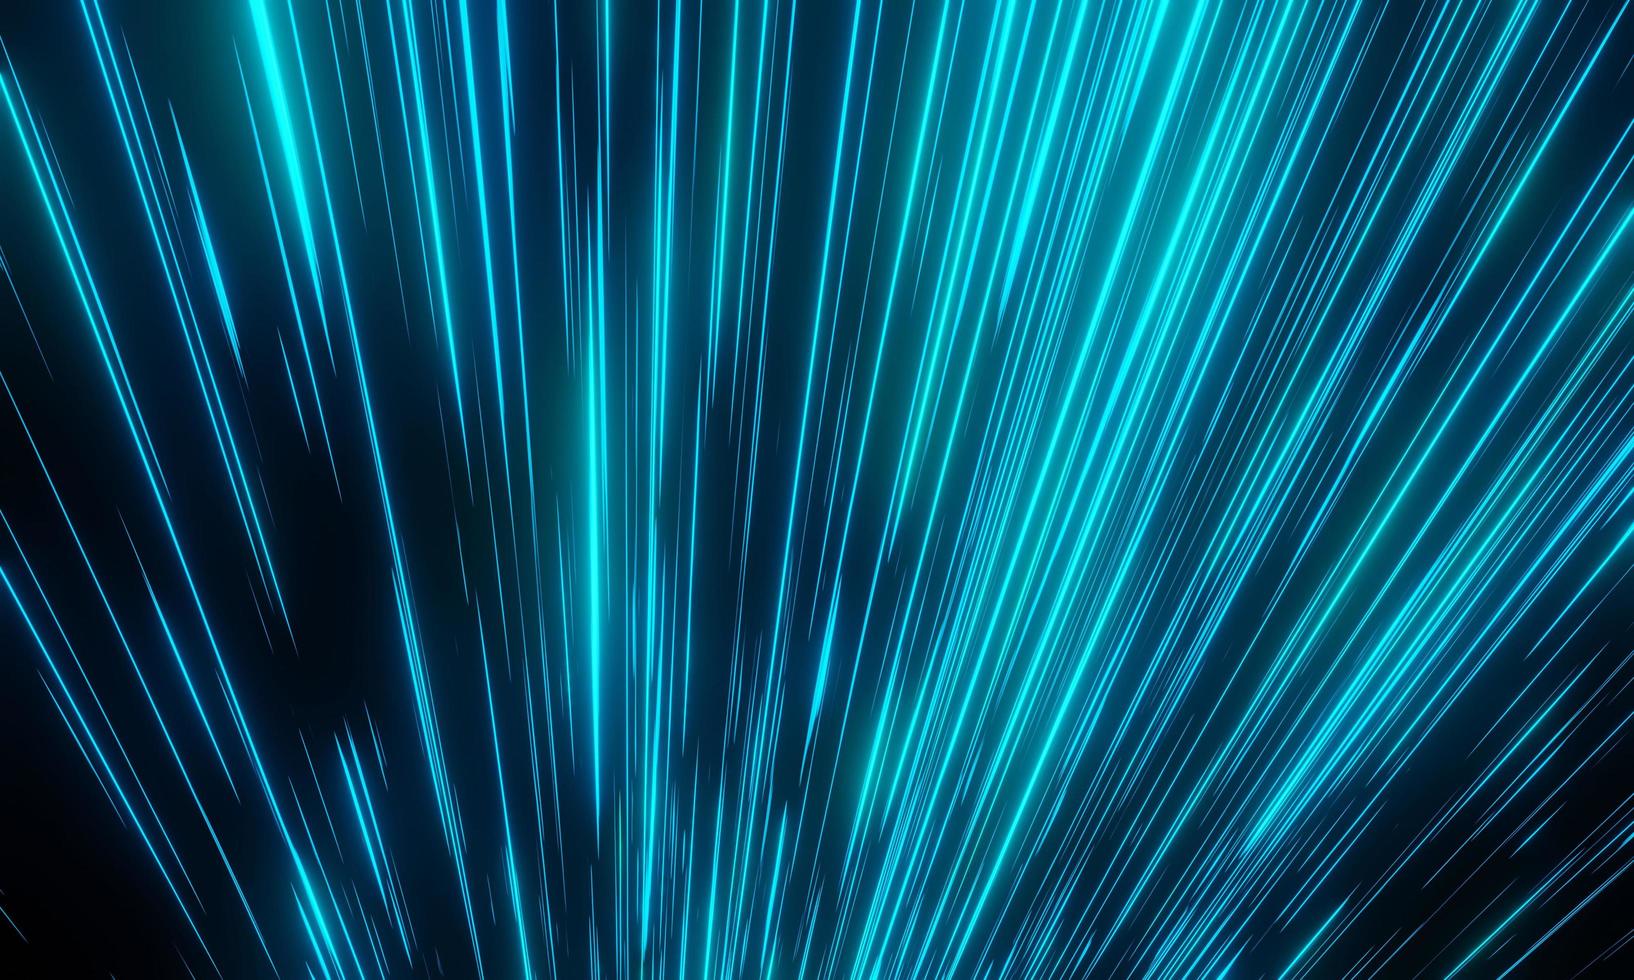 blauw licht met gloeiende look als stardust of meteoor en strepen die snel over een donkere achtergrond bewegen voor cyberspace en hyper space moving concept. 3D-rendering. foto